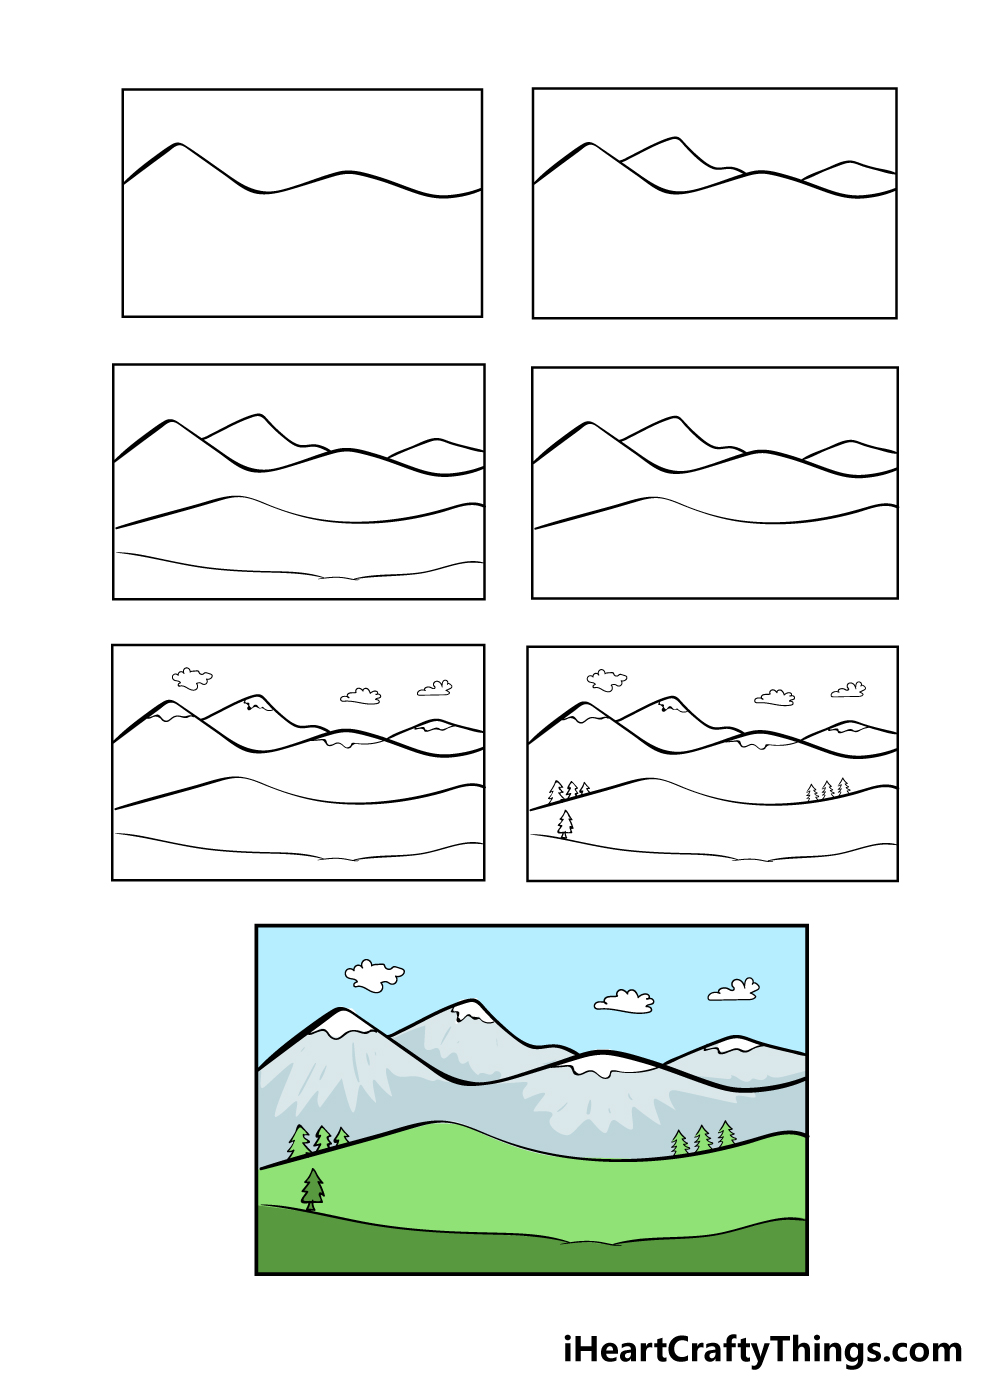 Hướng dẫn cách vẽ núi đơn giản với 7 bước cơ bản - Thiết kế nhà đẹp - Hướng dẫn, vẽ, núi, đơn giản, 7 bước, cơ bản Bạn muốn biết cách vẽ núi một cách đơn giản và nhanh chóng không? Đừng bỏ qua bài học này, chỉ với 7 bước cơ bản, bạn có thể vẽ được bức tranh núi trong tích tắc. Làm cho tâm hồn của bạn thư giãn và được trải nghiệm tận tay cách vẽ núi của chính mình.